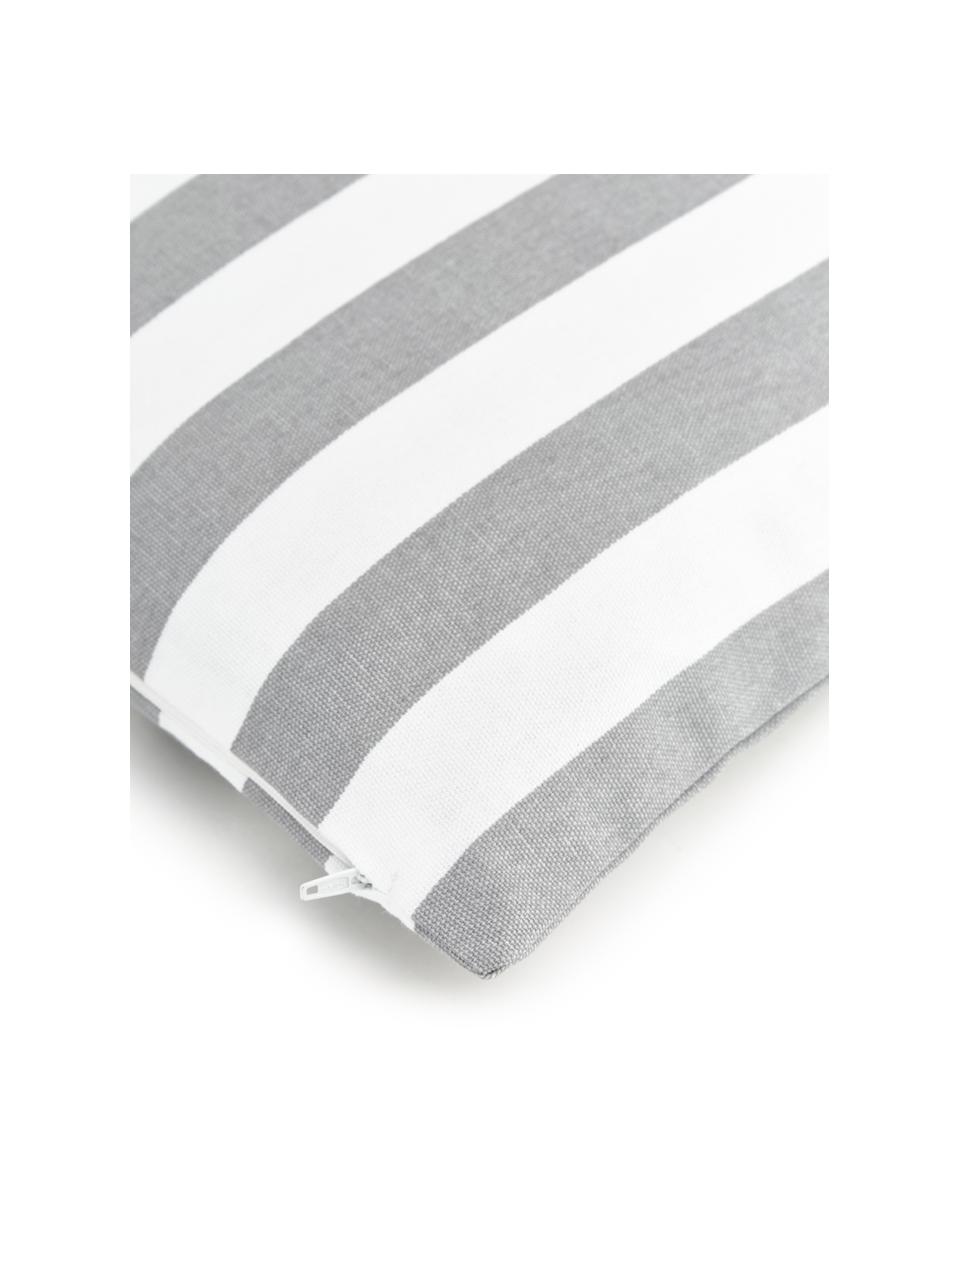 Federa arredo a righe in grigio chiaro/bianco Timon, 100% cotone, Grigio, Larg. 50 x Lung. 50 cm